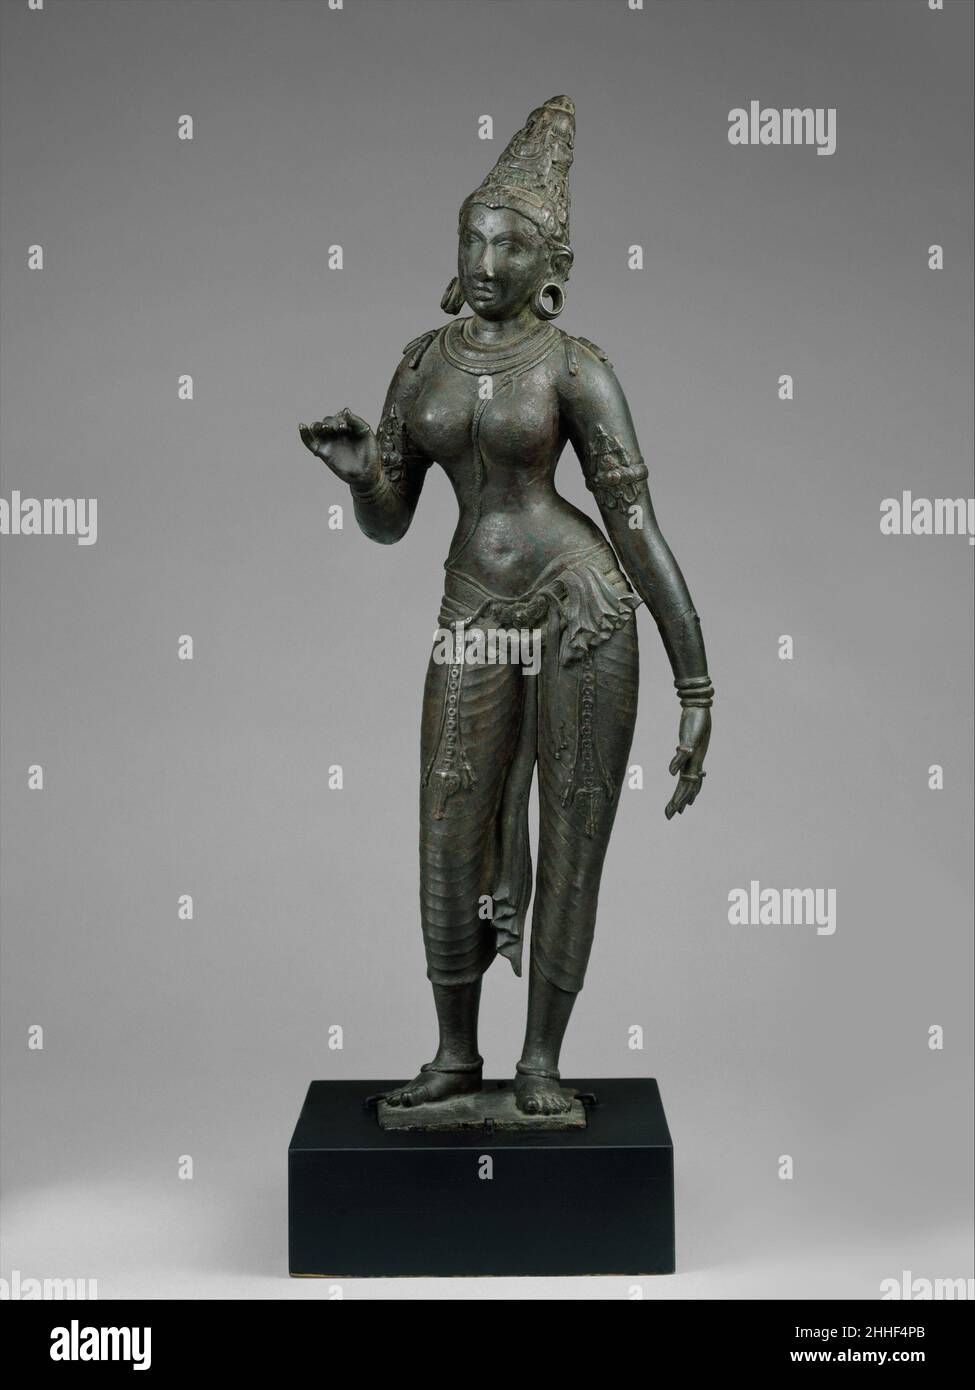 Parvati pie ca. Primer cuarto del indio del siglo 10th (Tamil Nadu) Parvati es la consorte de Shiva y madre del dios Ganesha encabezado elefante. Esta magnífica estatua es una de las mejores representaciones de Chola de Parvati que se encuentran fuera de la India. El genio y la habilidad obvia del escultor produjo una imagen atemporal de la diosa así como una figura femenina de belleza y gracia sobrepasando. Su carro lírico, rítmico y las líneas suaves pero firmes de su cuerpo sugieren el ideal de la hembra divina y eterna. Escuche a los expertos iluminar la historia de esta obra de arte Escuchar Reproducir o hacer una pausa #7960. S Foto de stock